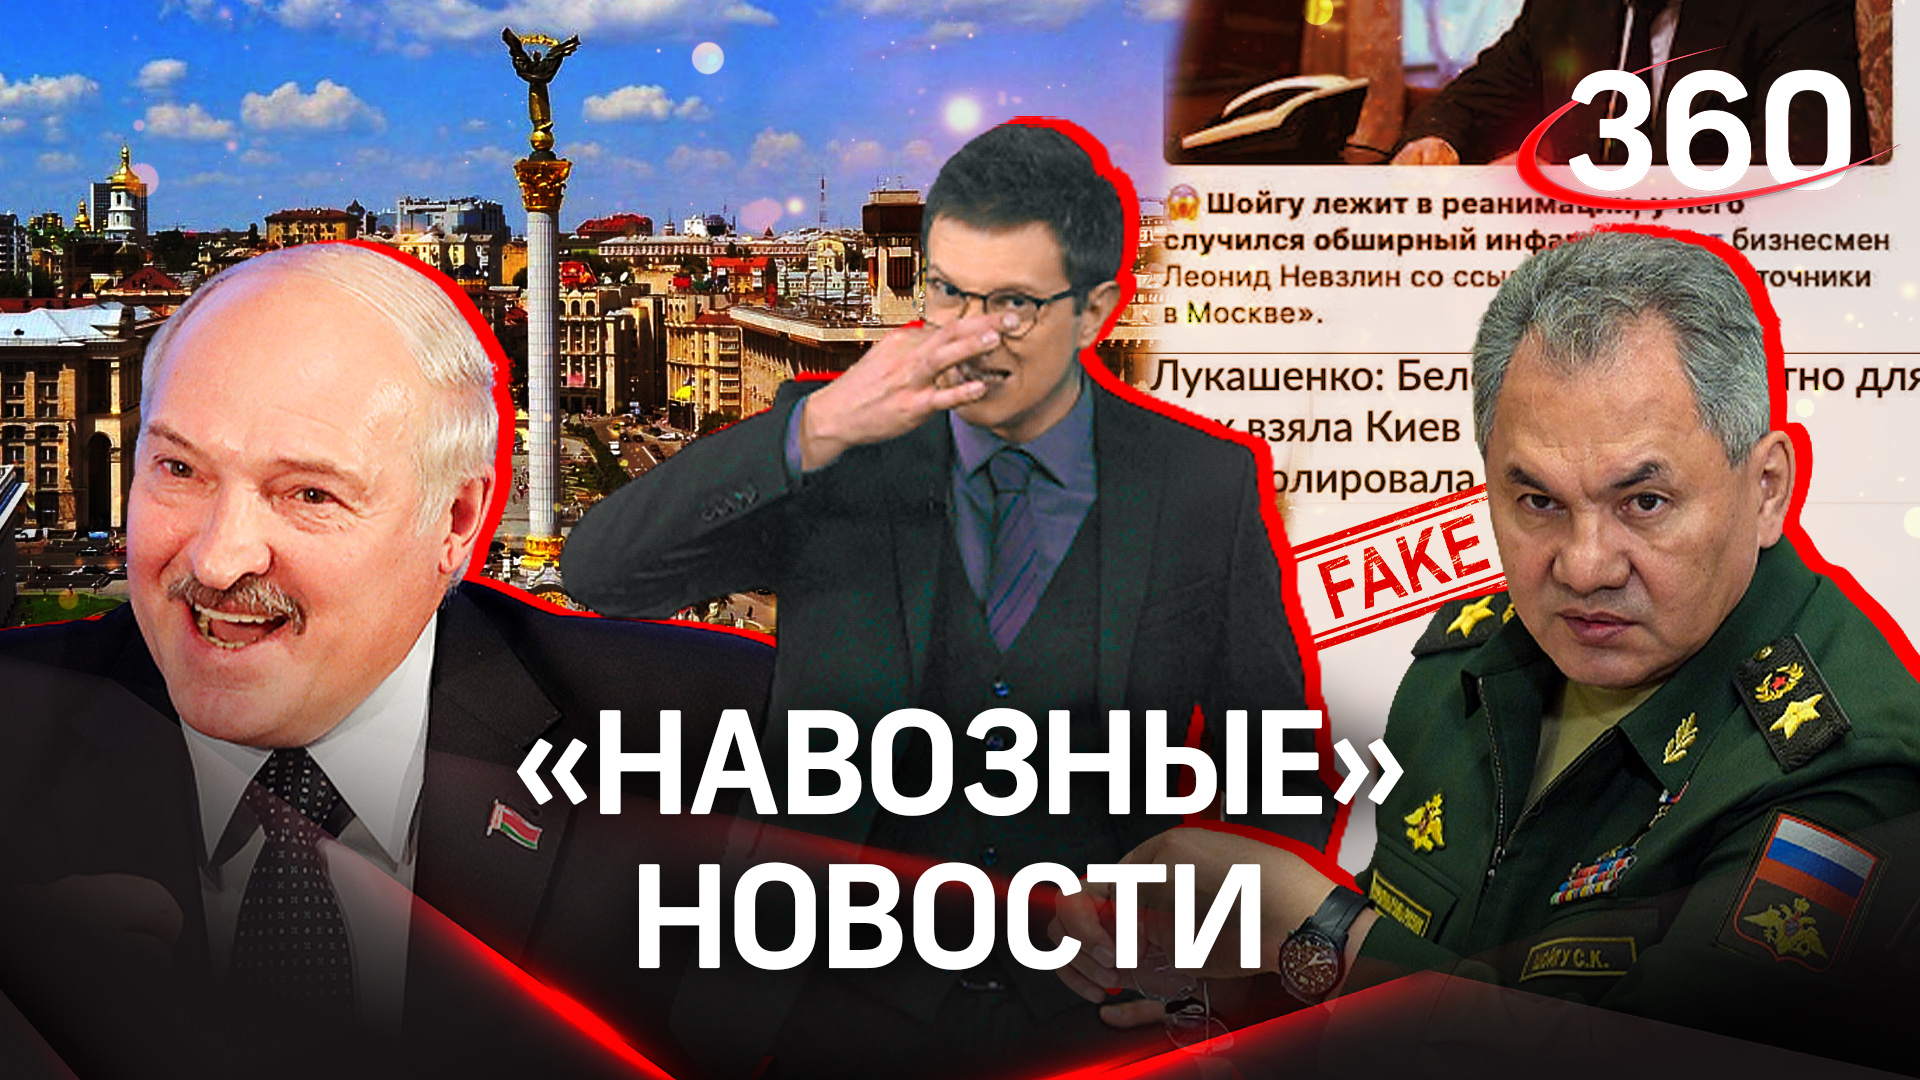 У Шойгу опять инфаркт, а Лукашенко взял Киев - «новости» с Украины